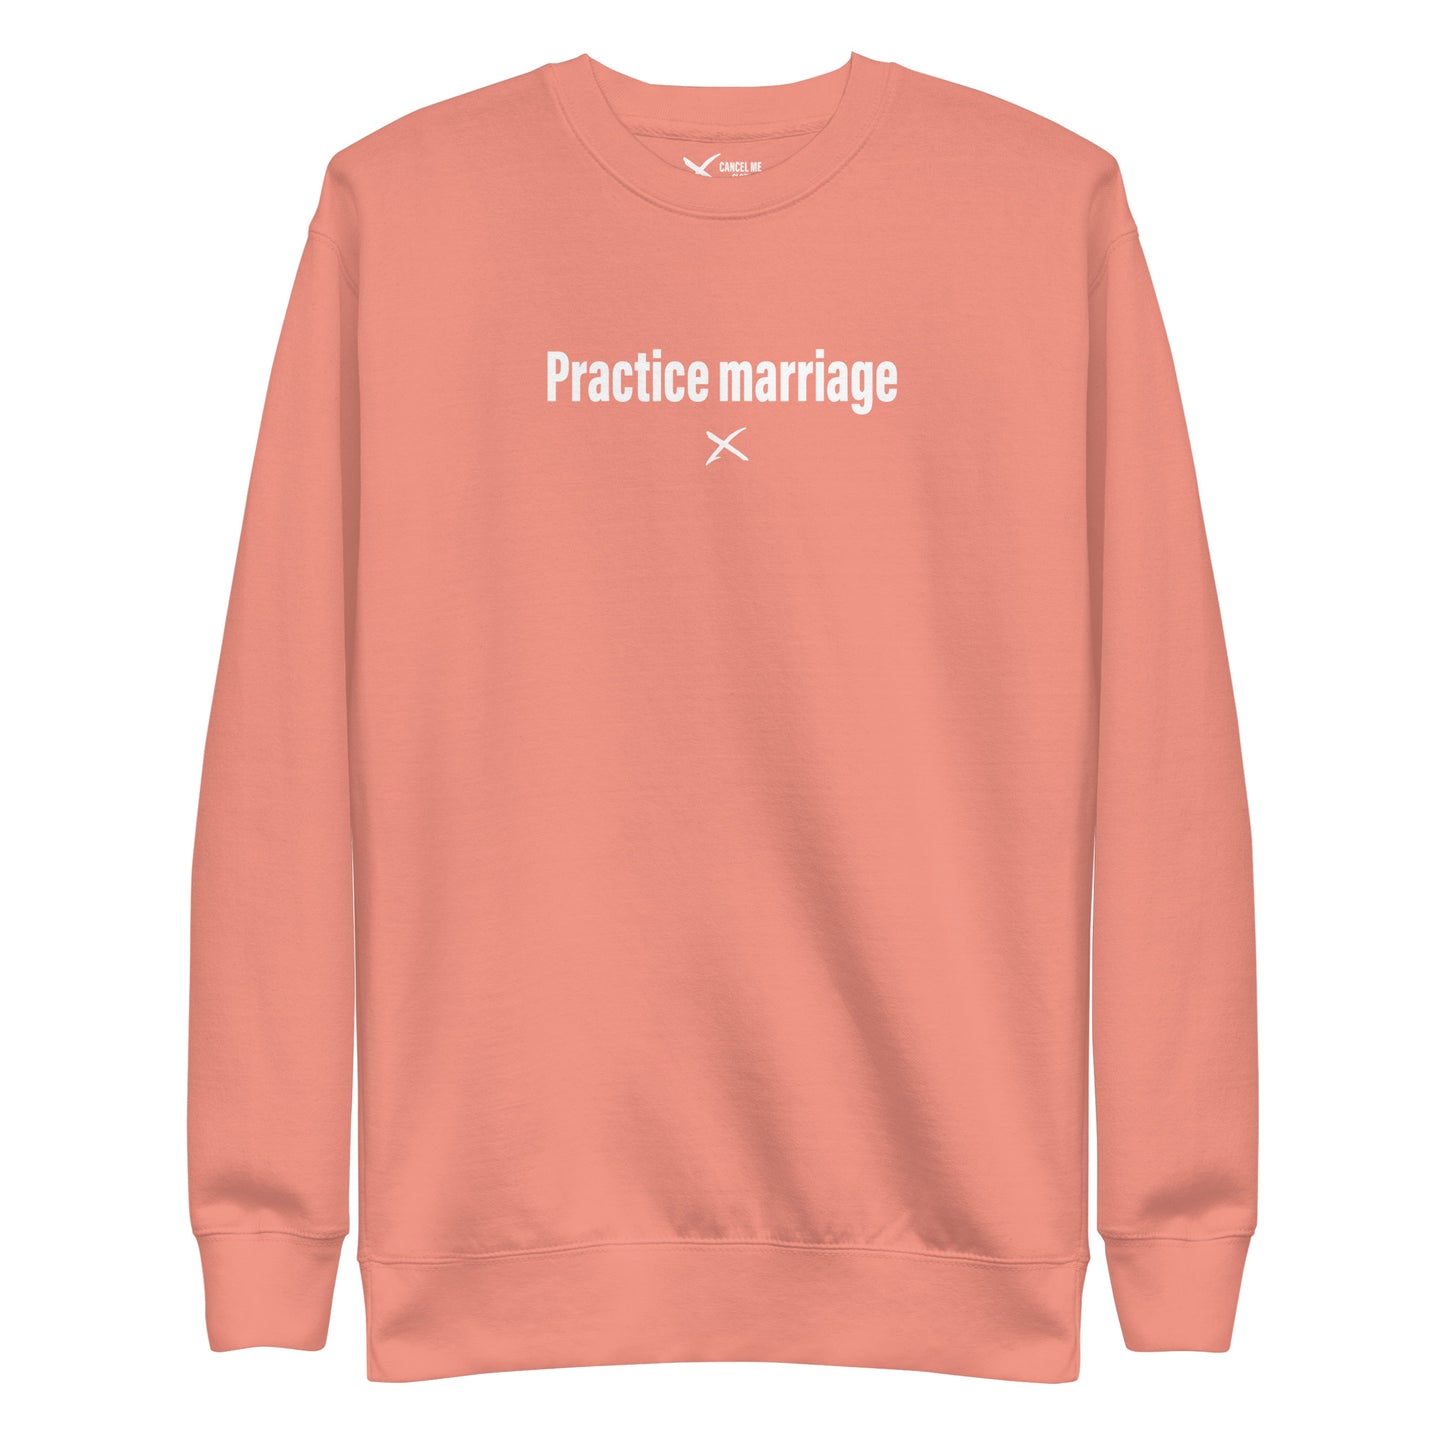 Practice marriage - Sweatshirt